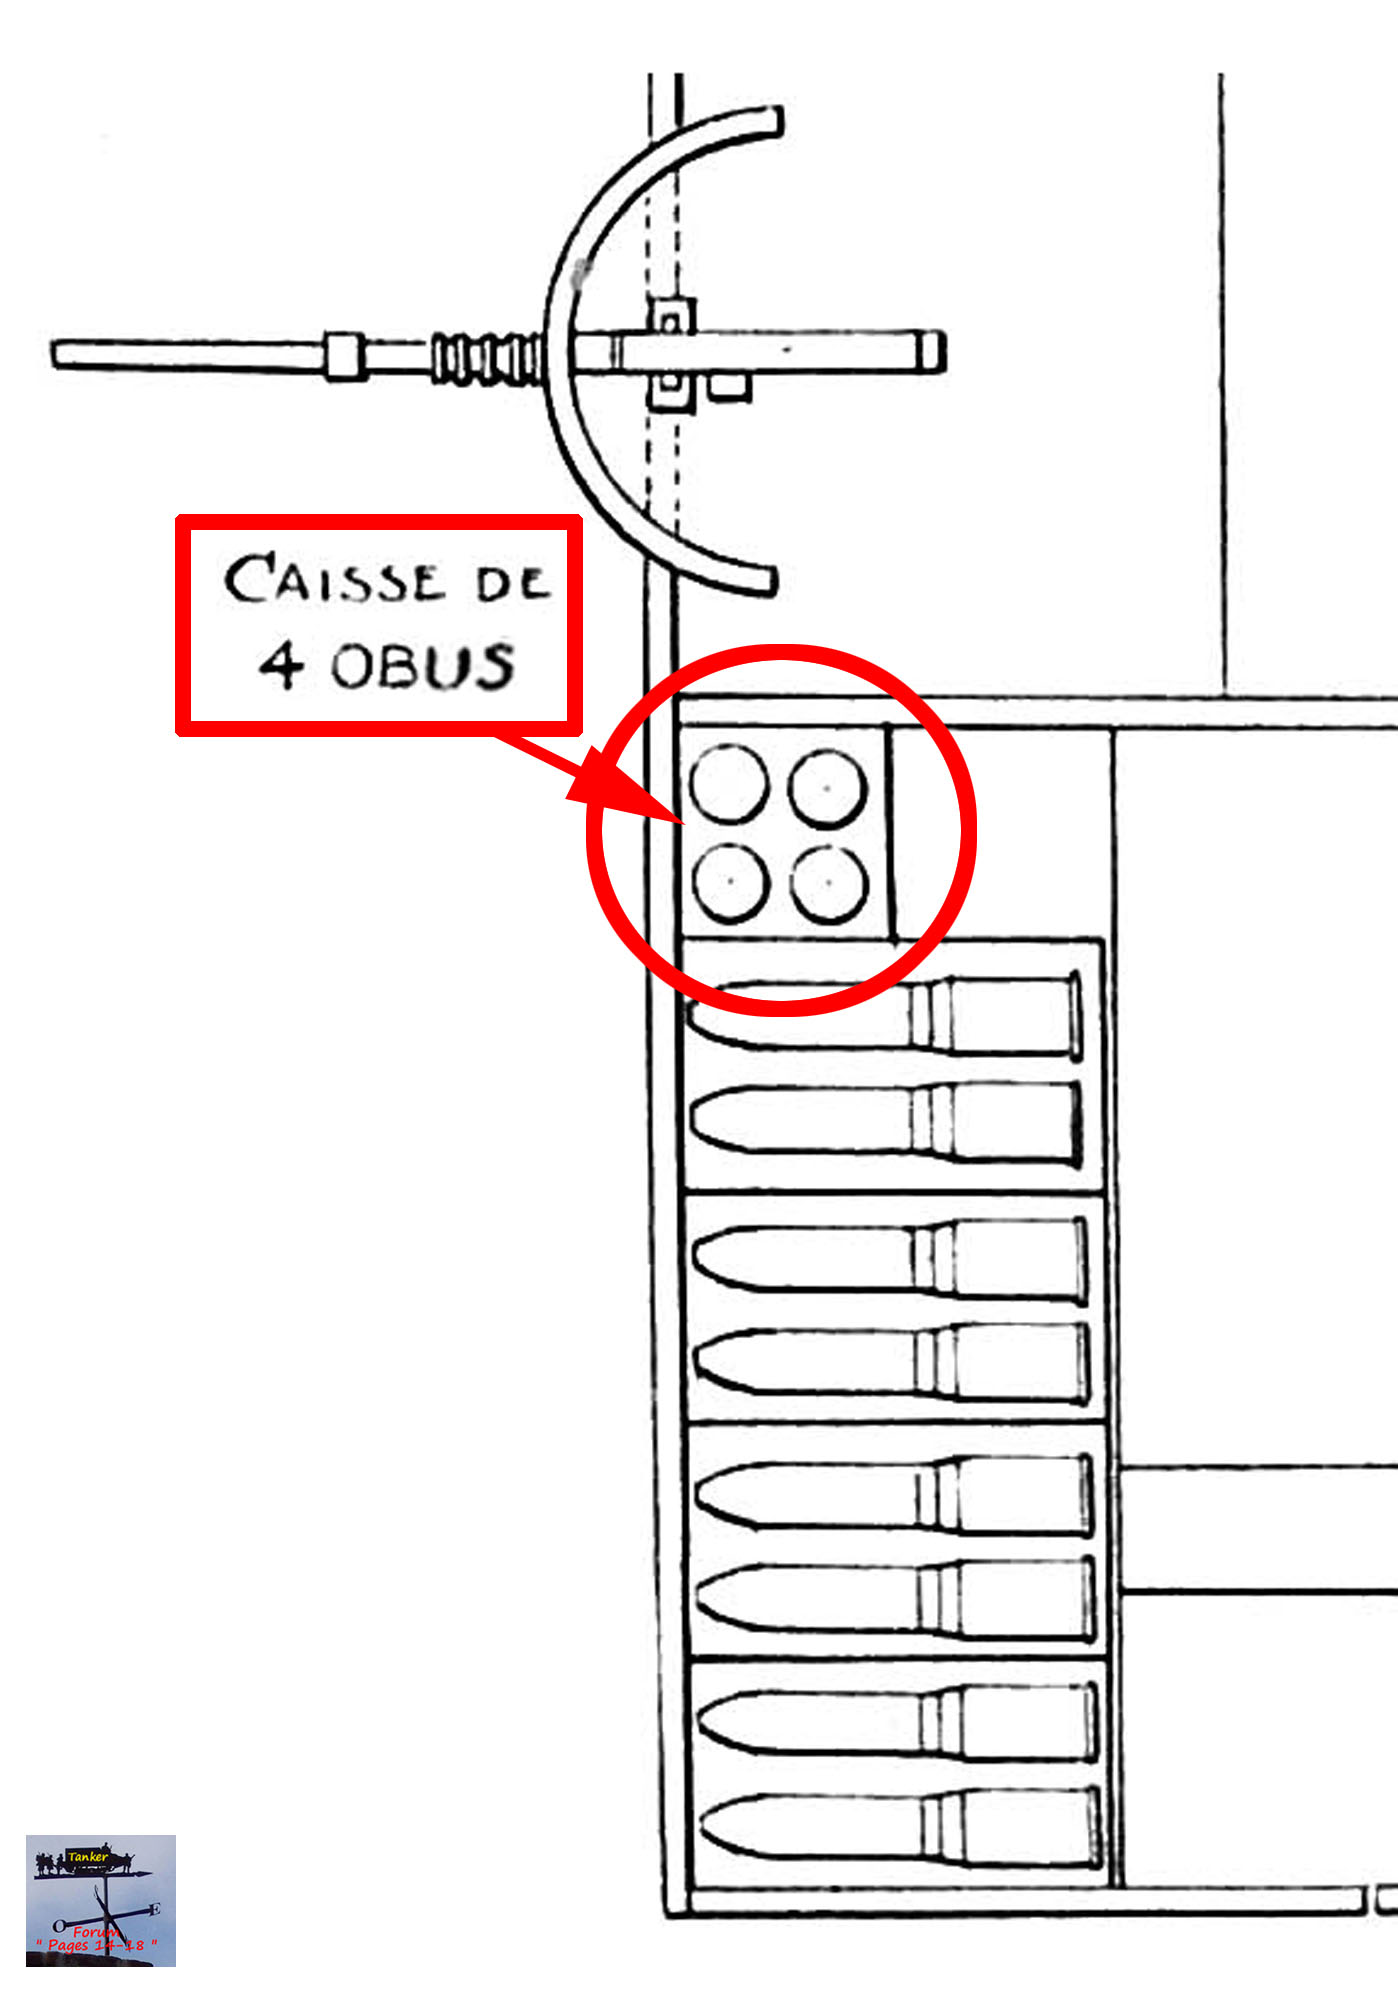 16a - Caisse de 4 obus de 75.jpg